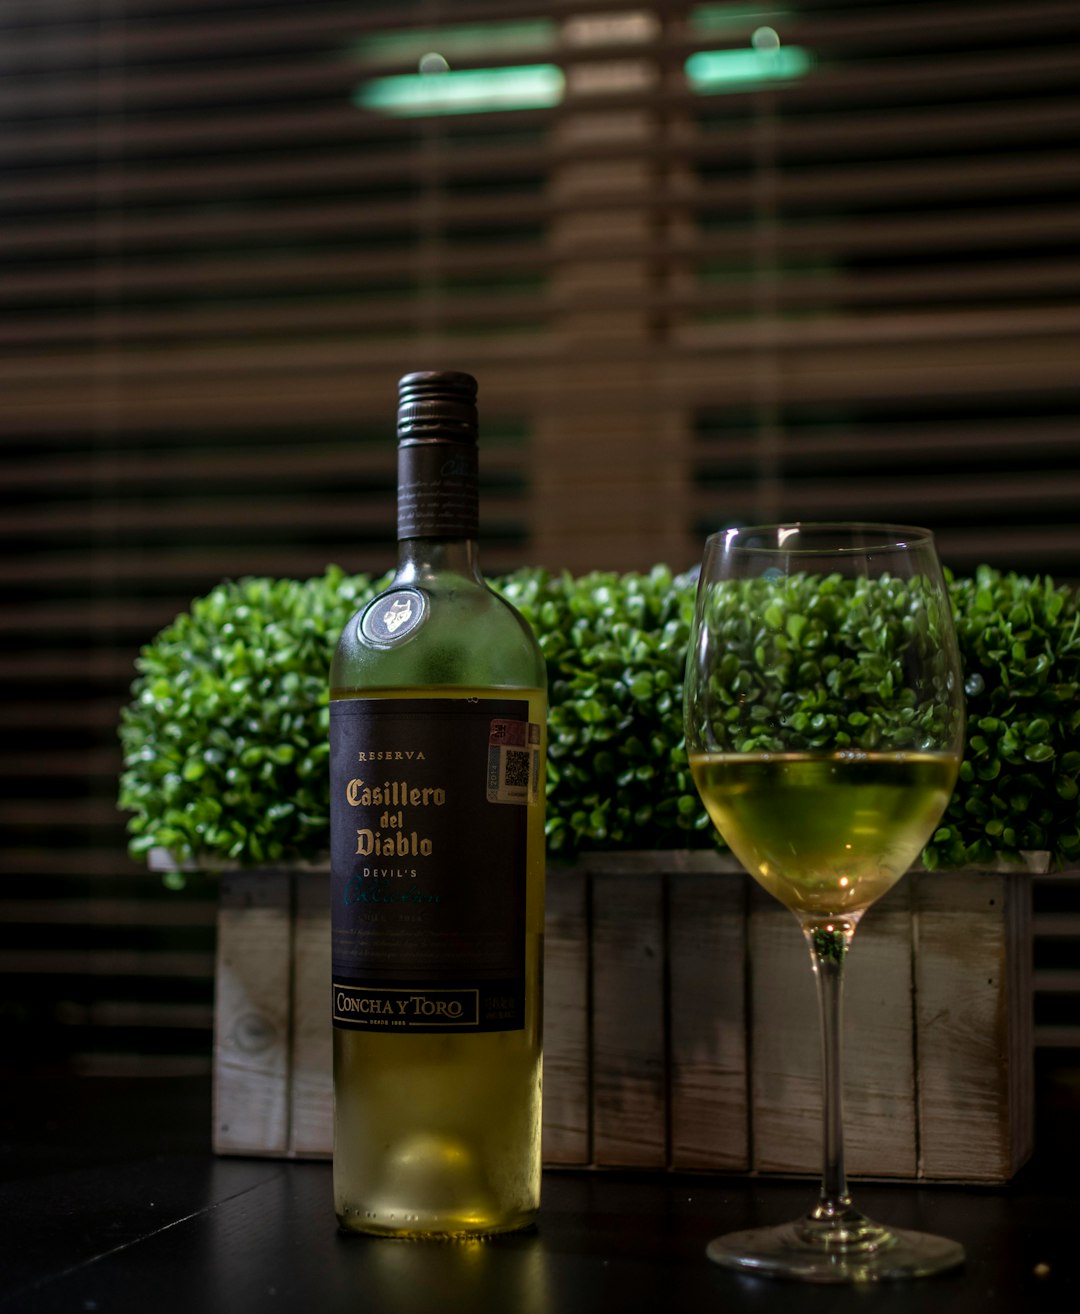 green wine bottle beside clear wine glass